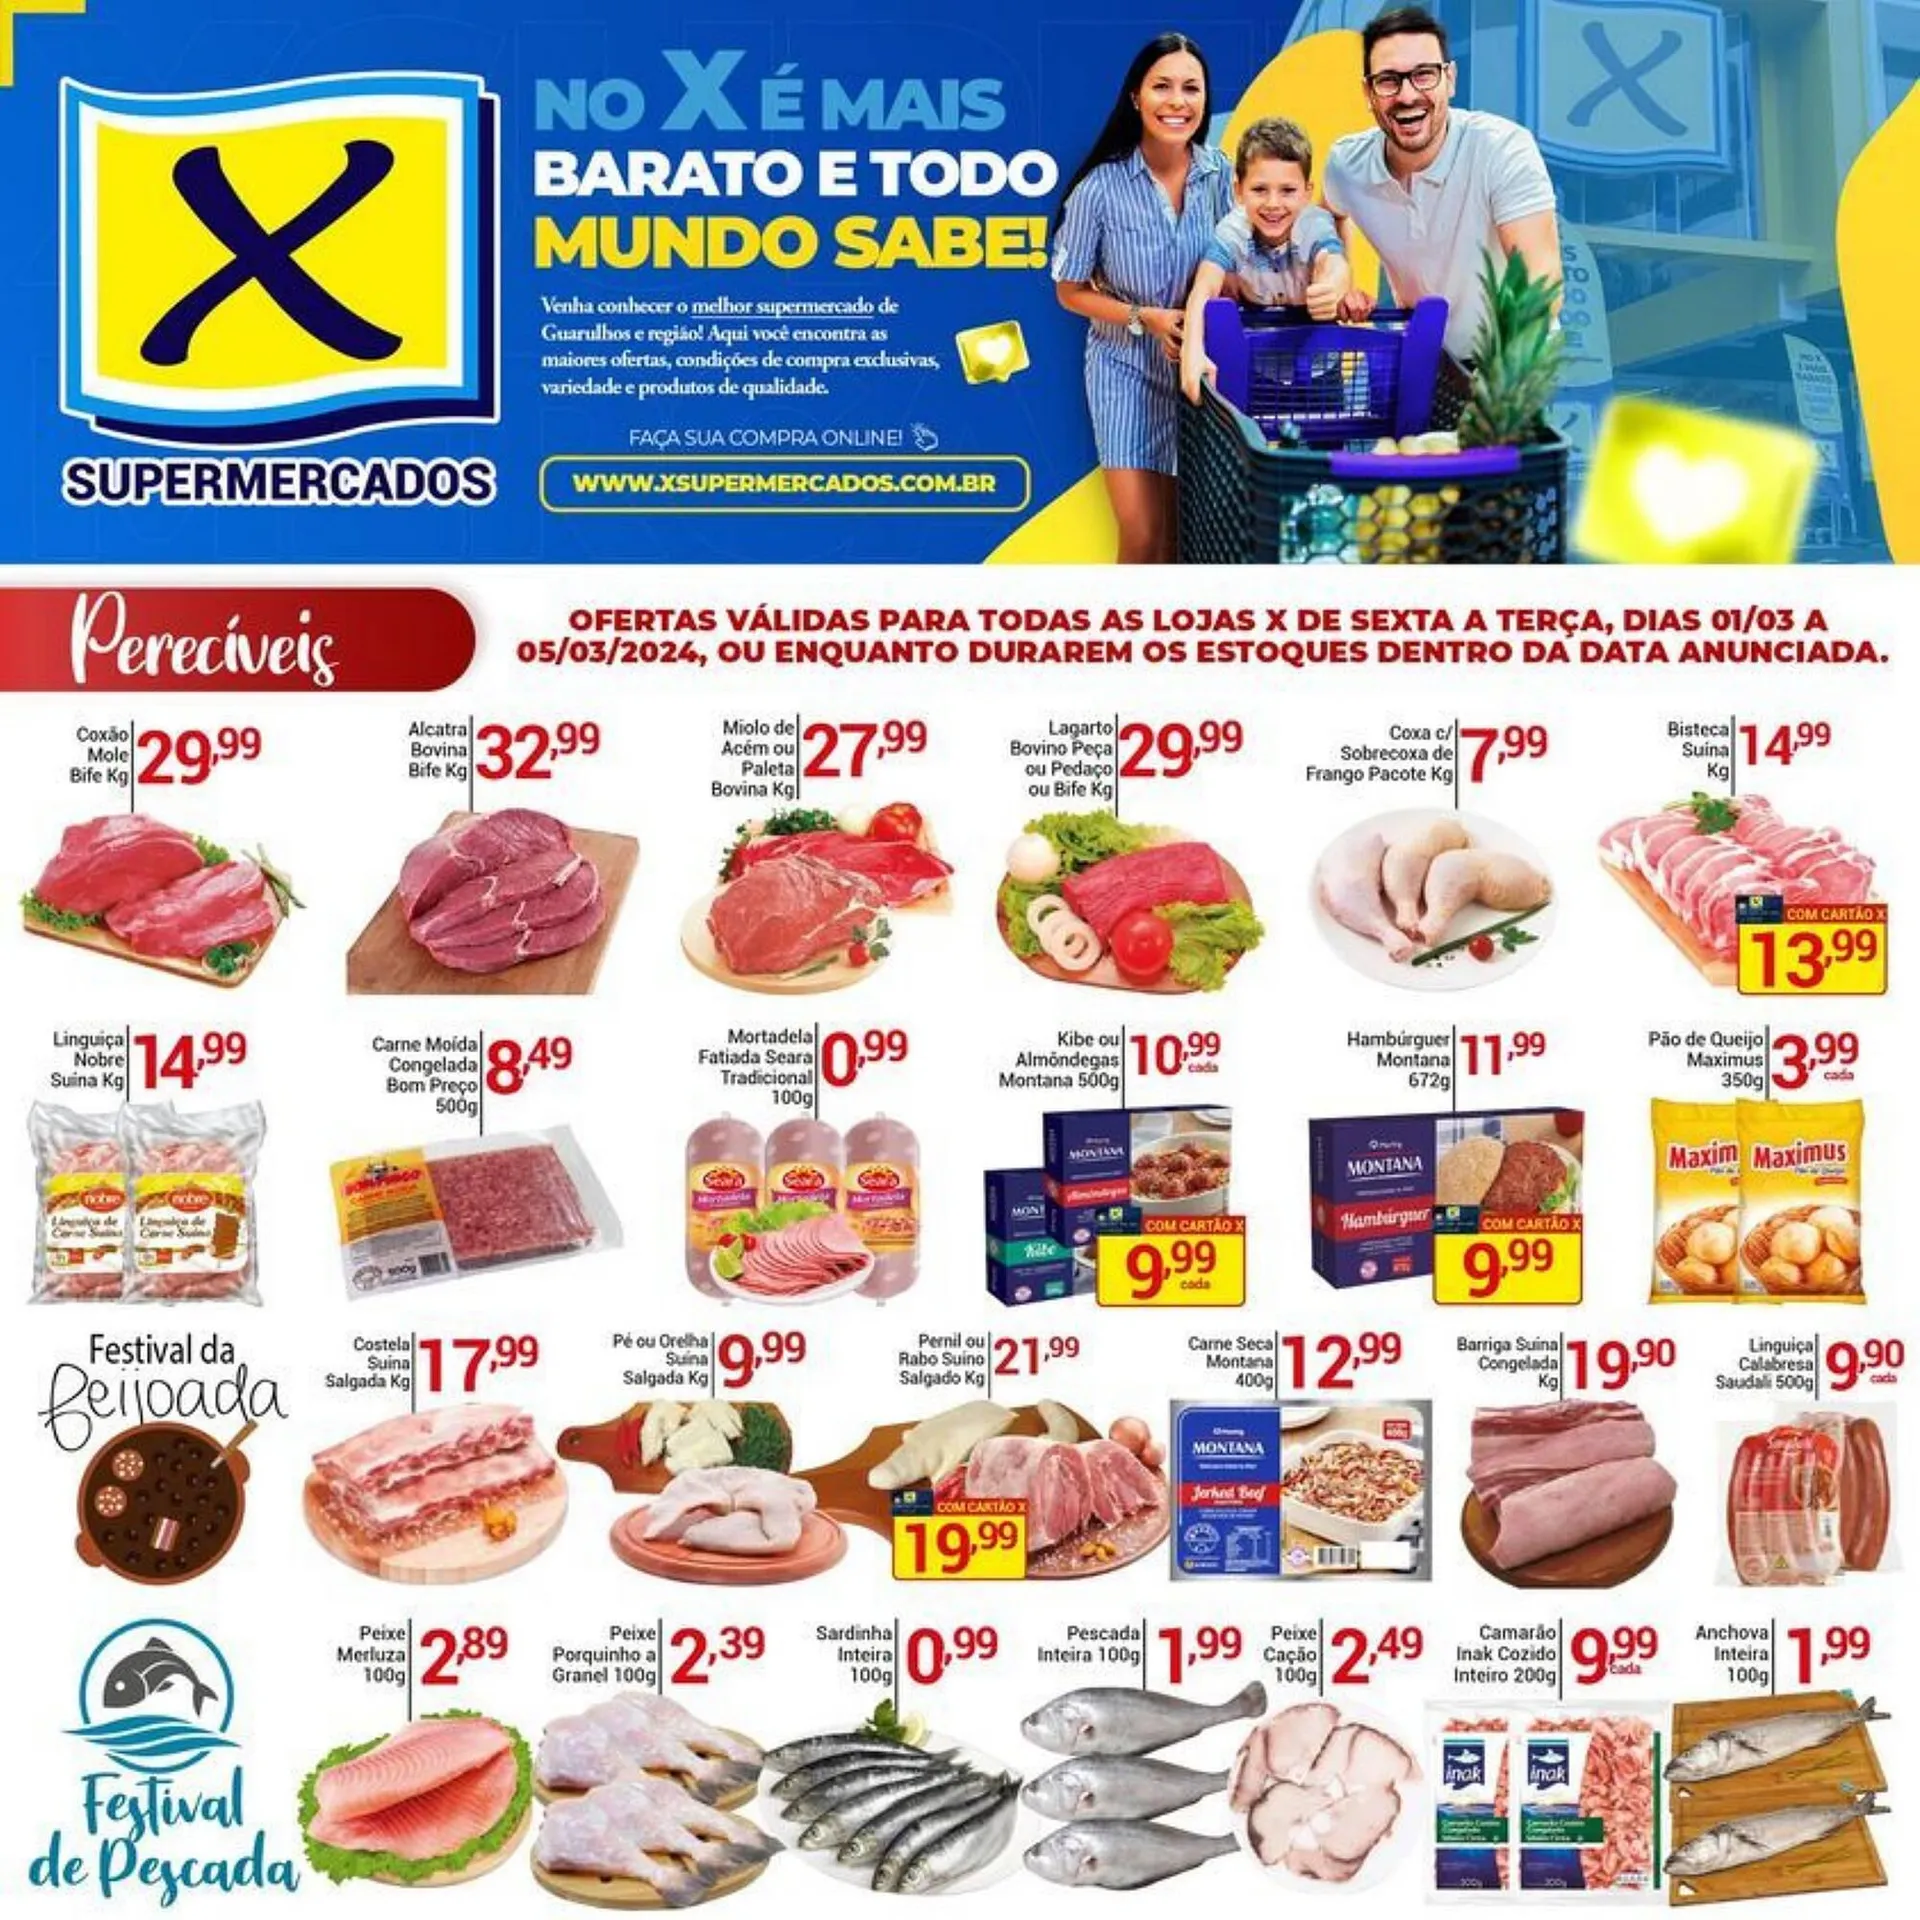 Encarte de Catálogo X Supermercados 1 de março até 5 de março 2024 - Pagina 